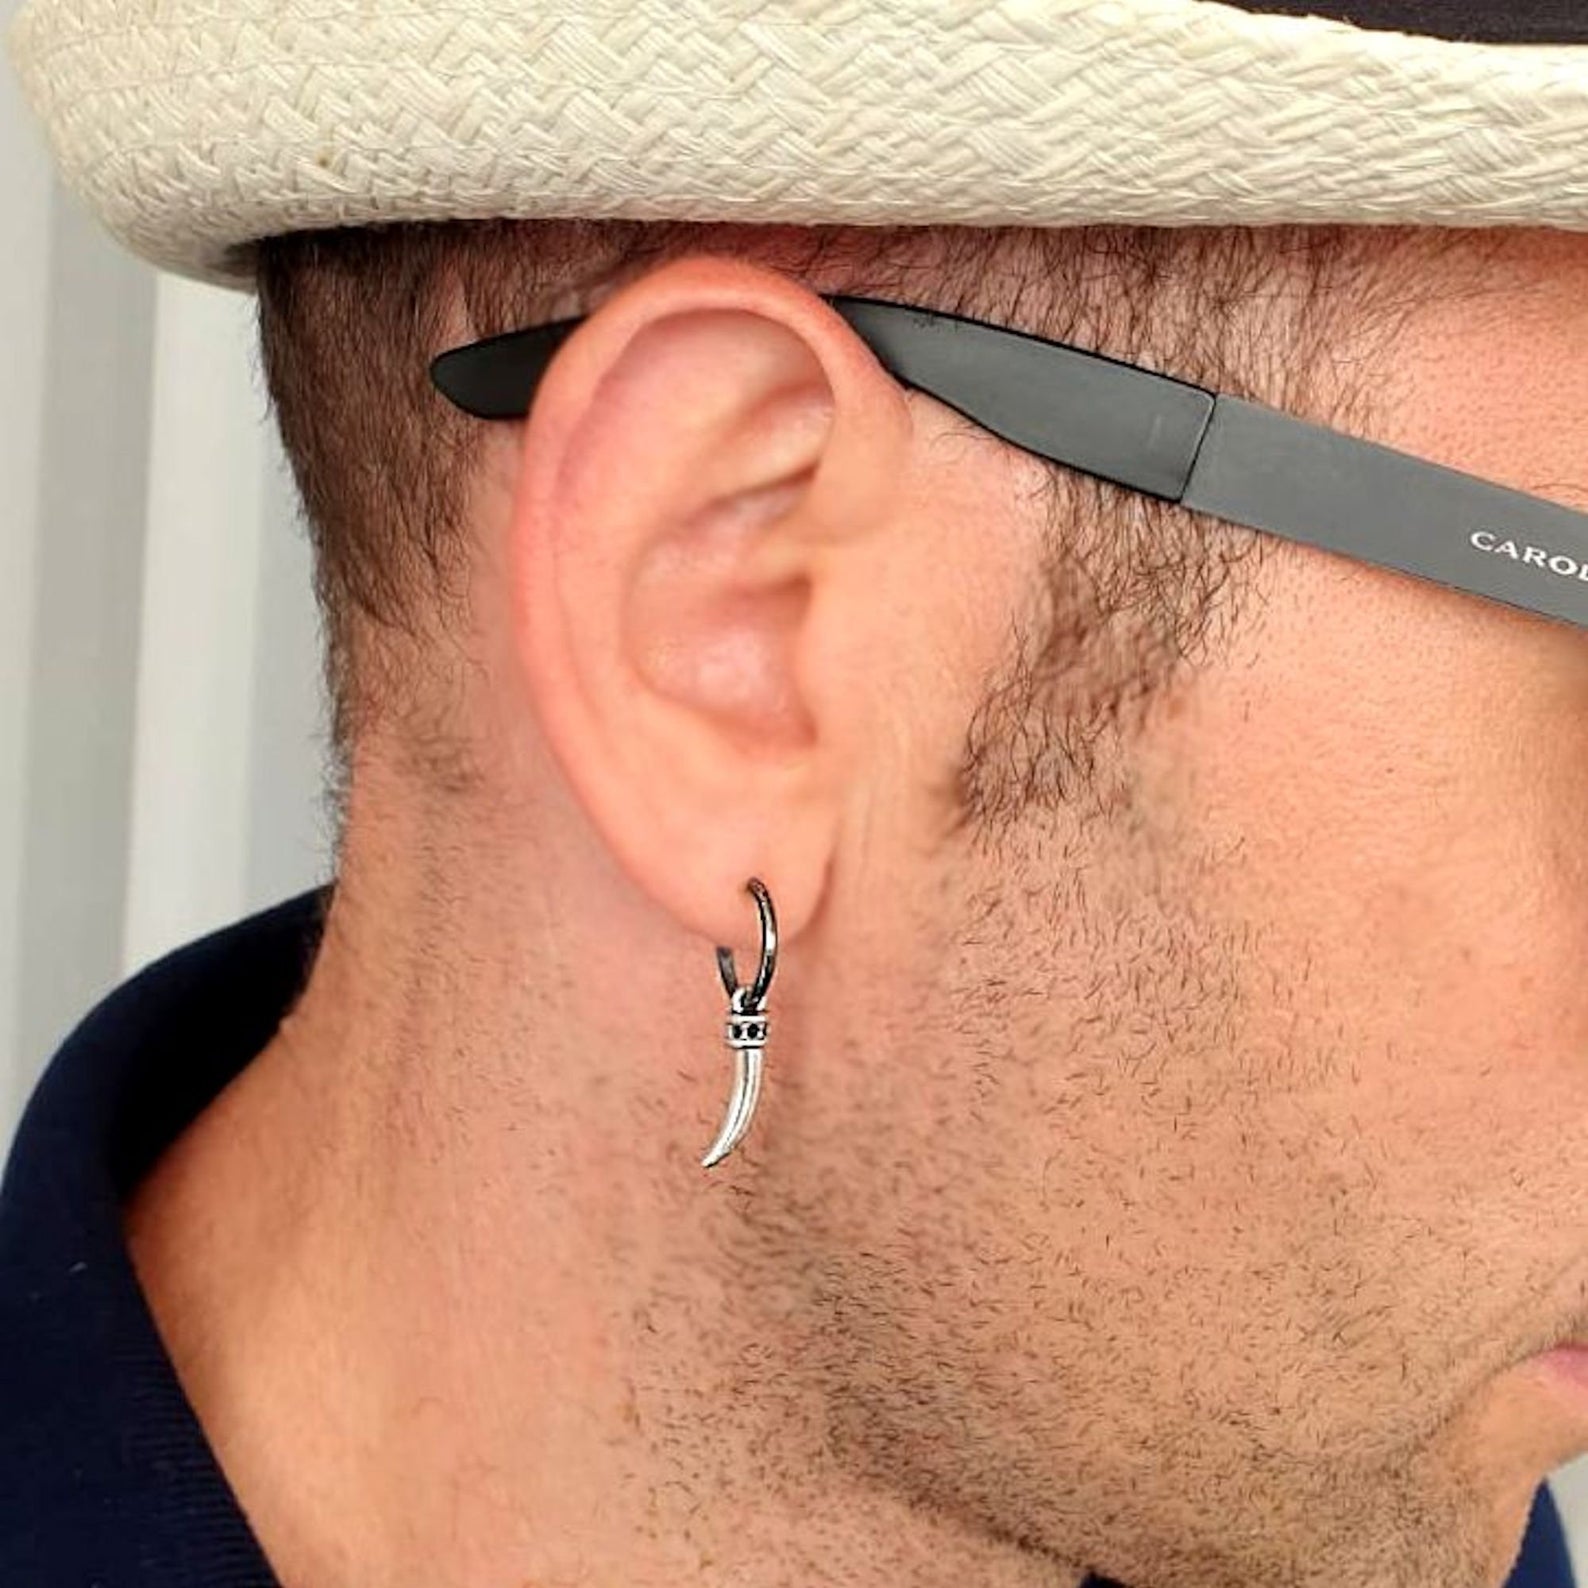 Dice Dangle Earring for Men - Charm Drop Earring - Jewelry for Men - Nadin  Art Design - Personalized Jewelry